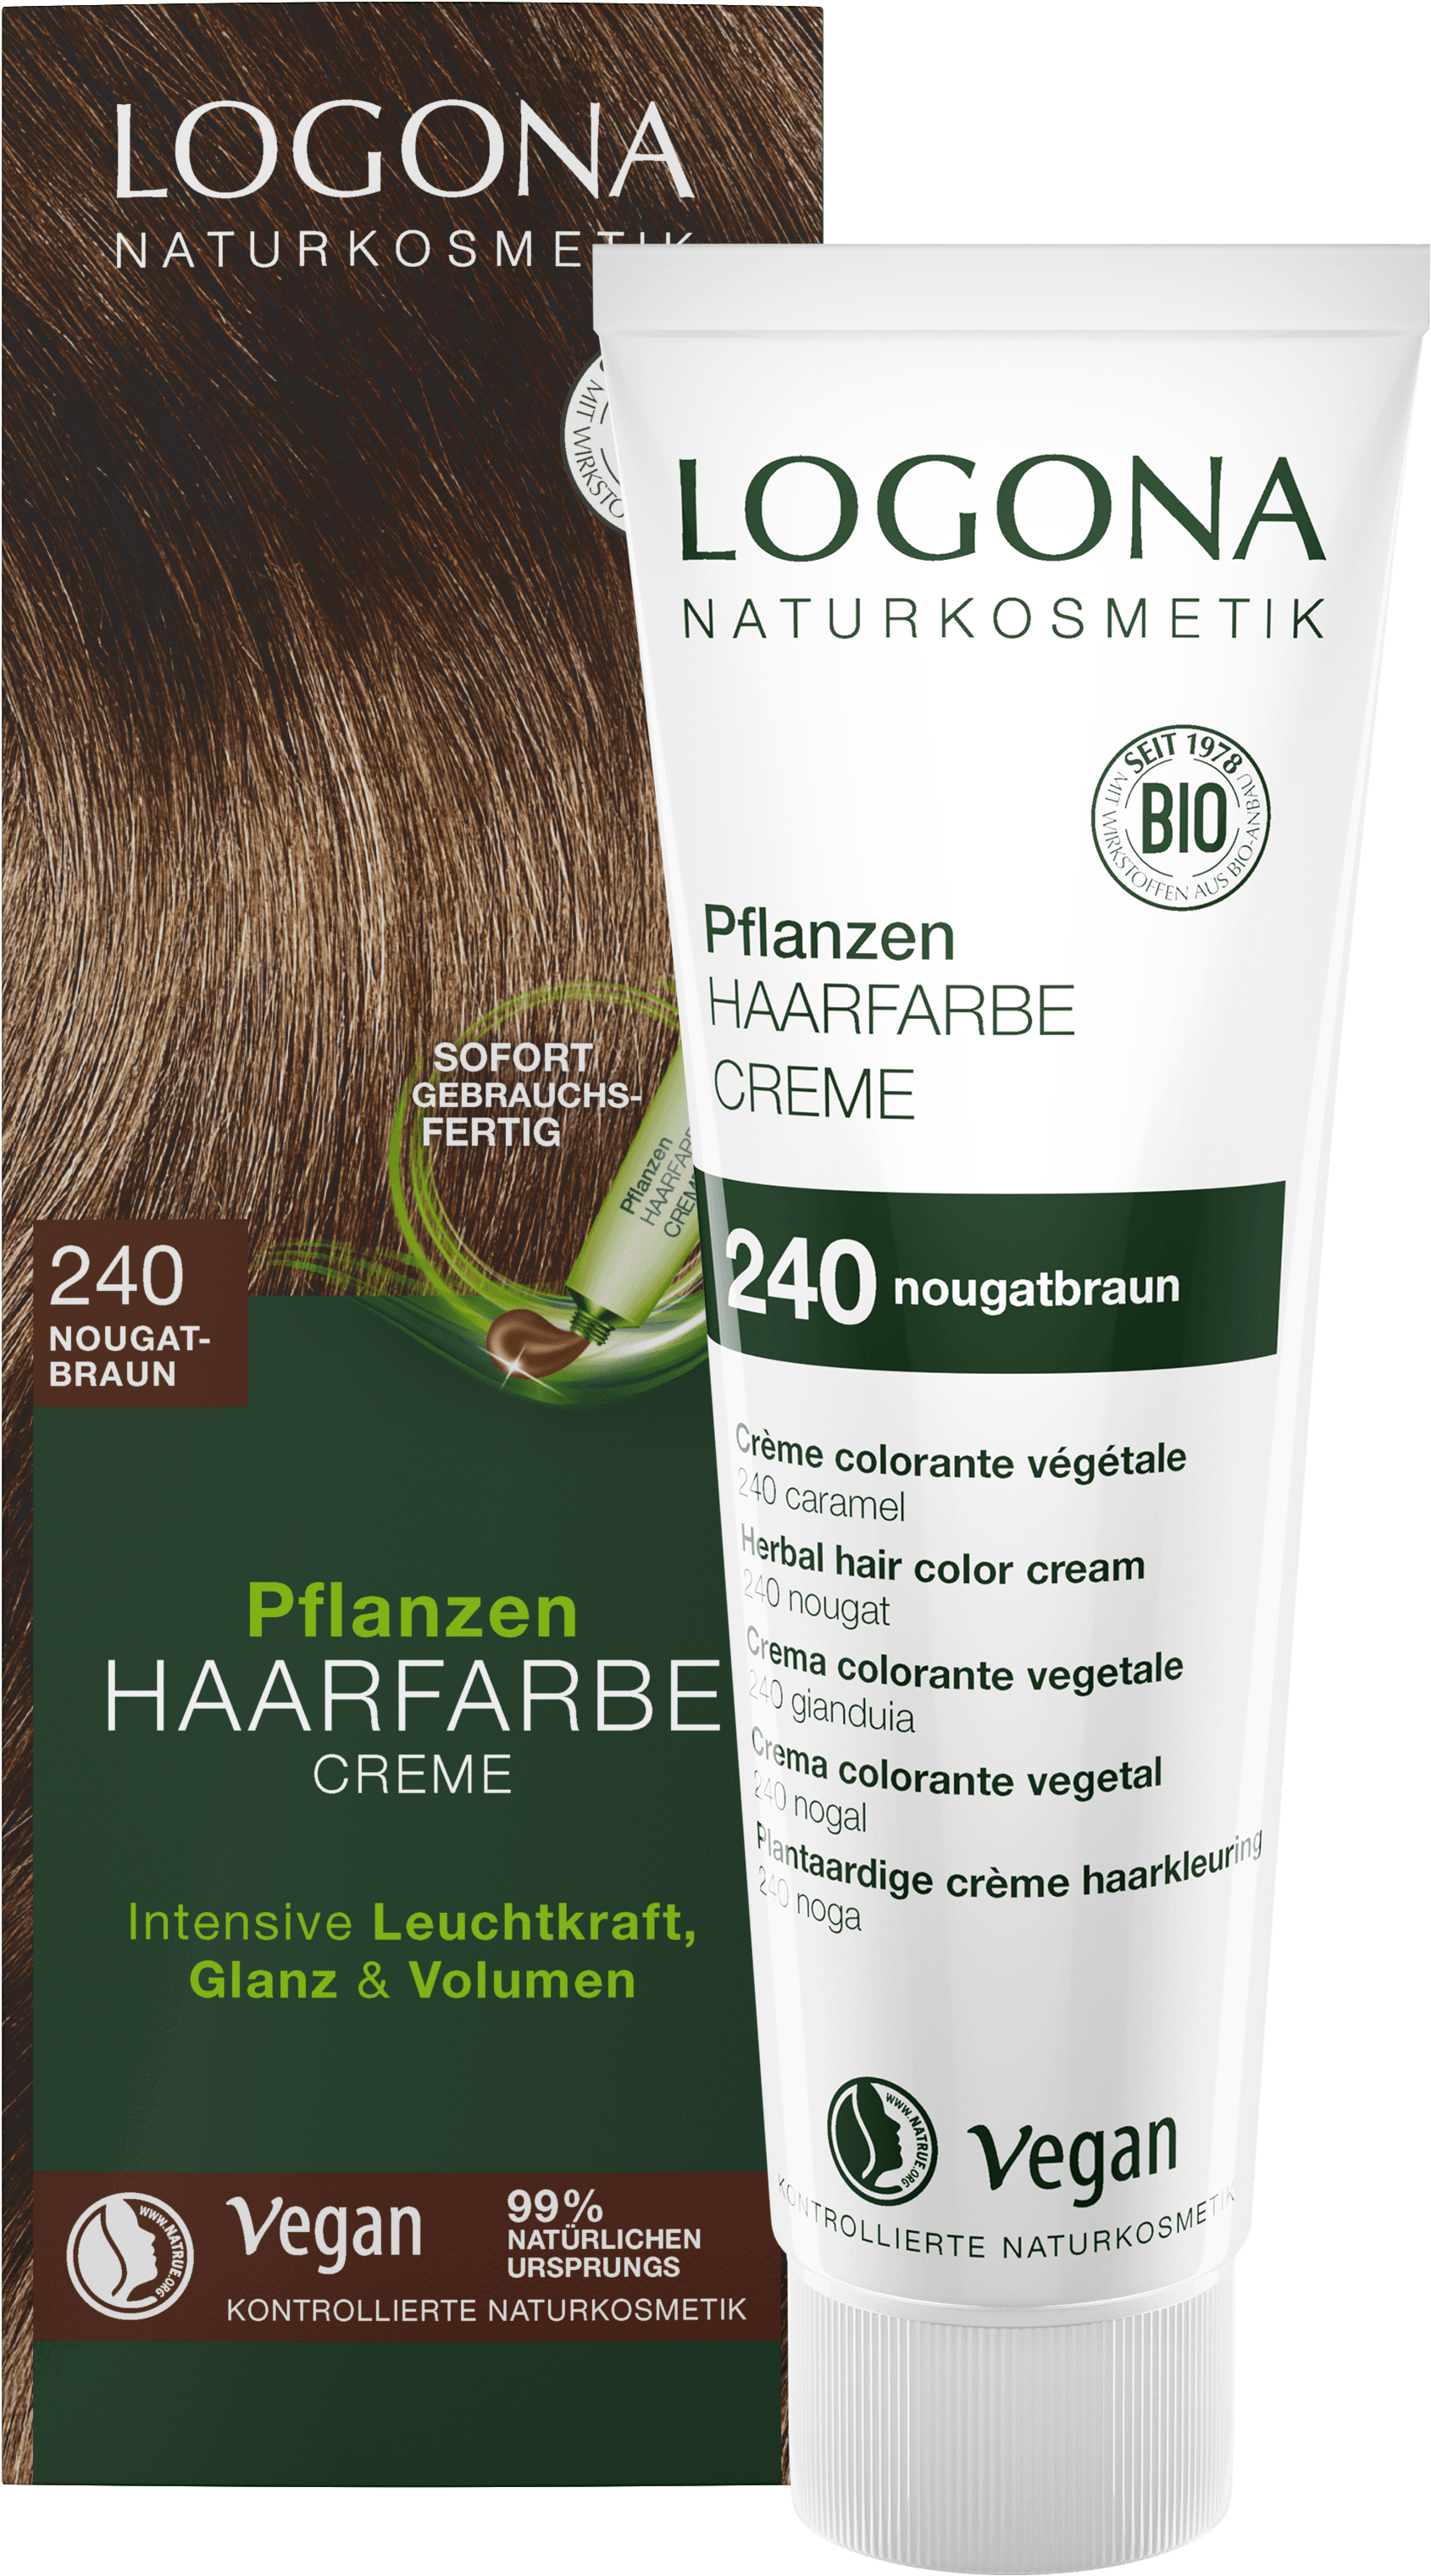 Pflanzen-Haarfarbe Creme 240 Nougatbraun | LOGONA Naturkosmetik